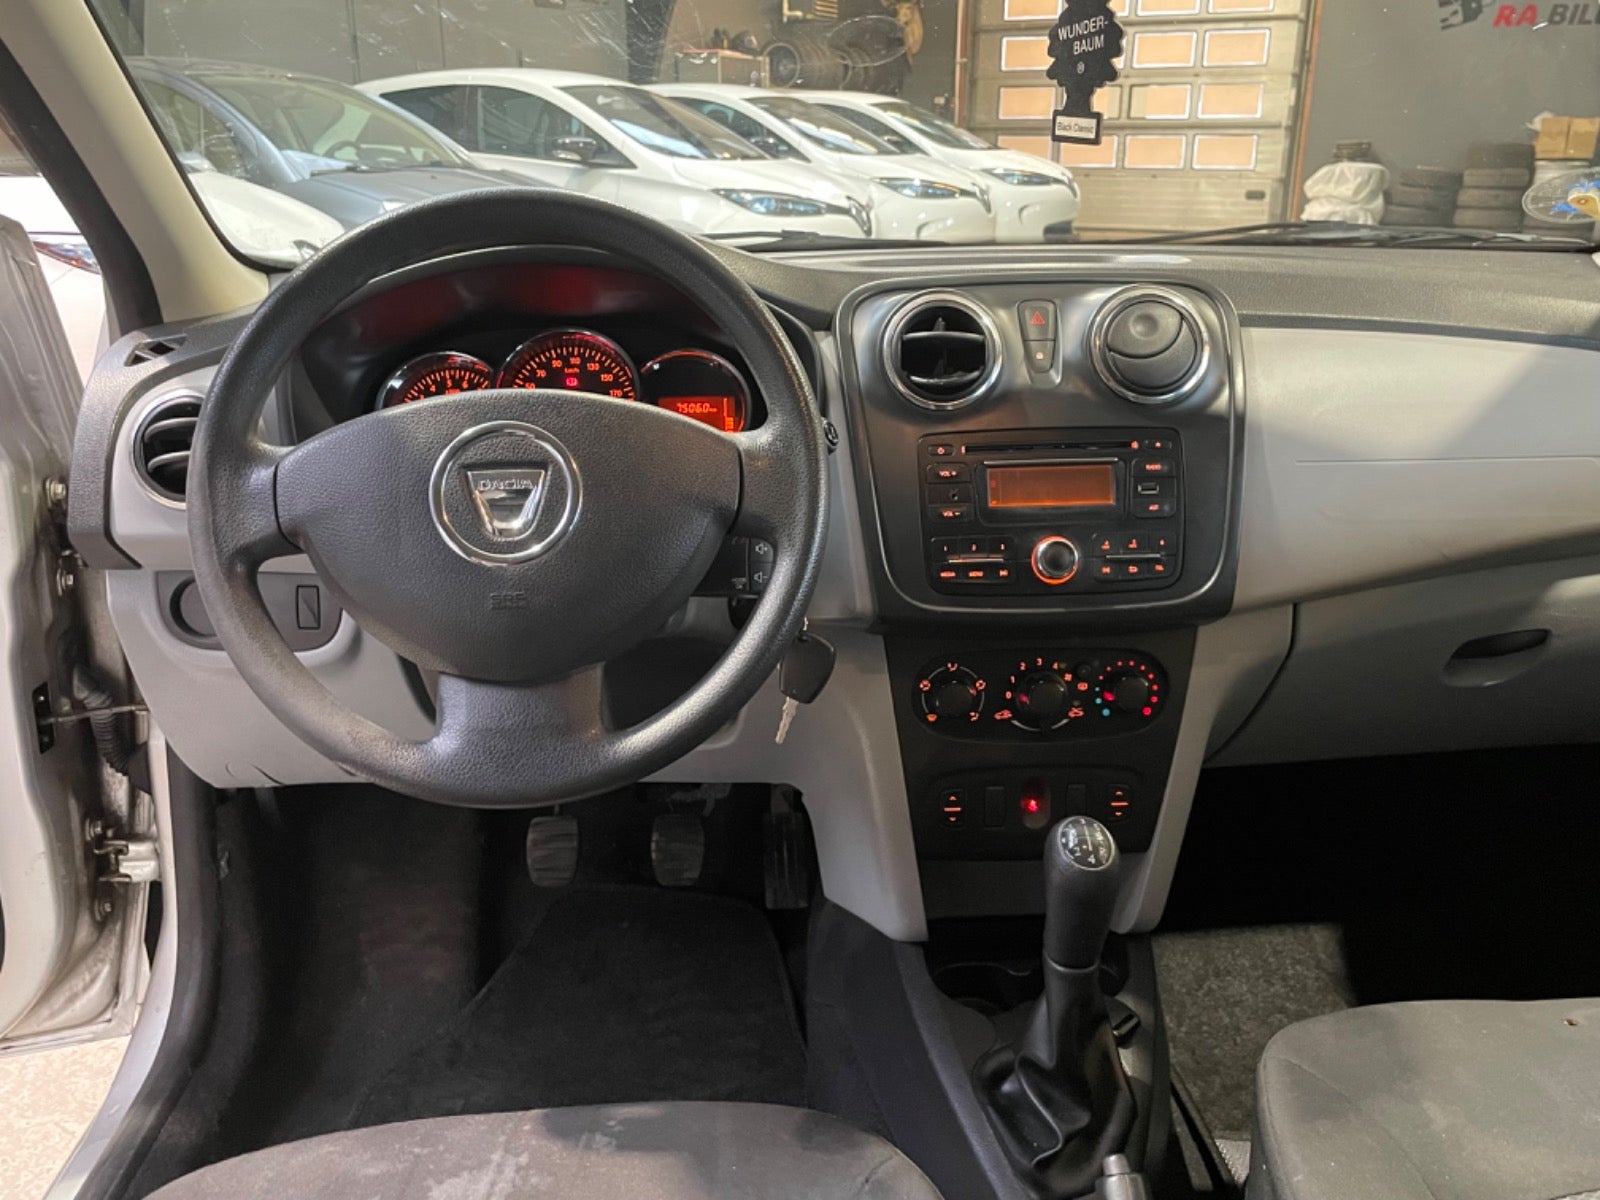 Dacia Sandero 2014